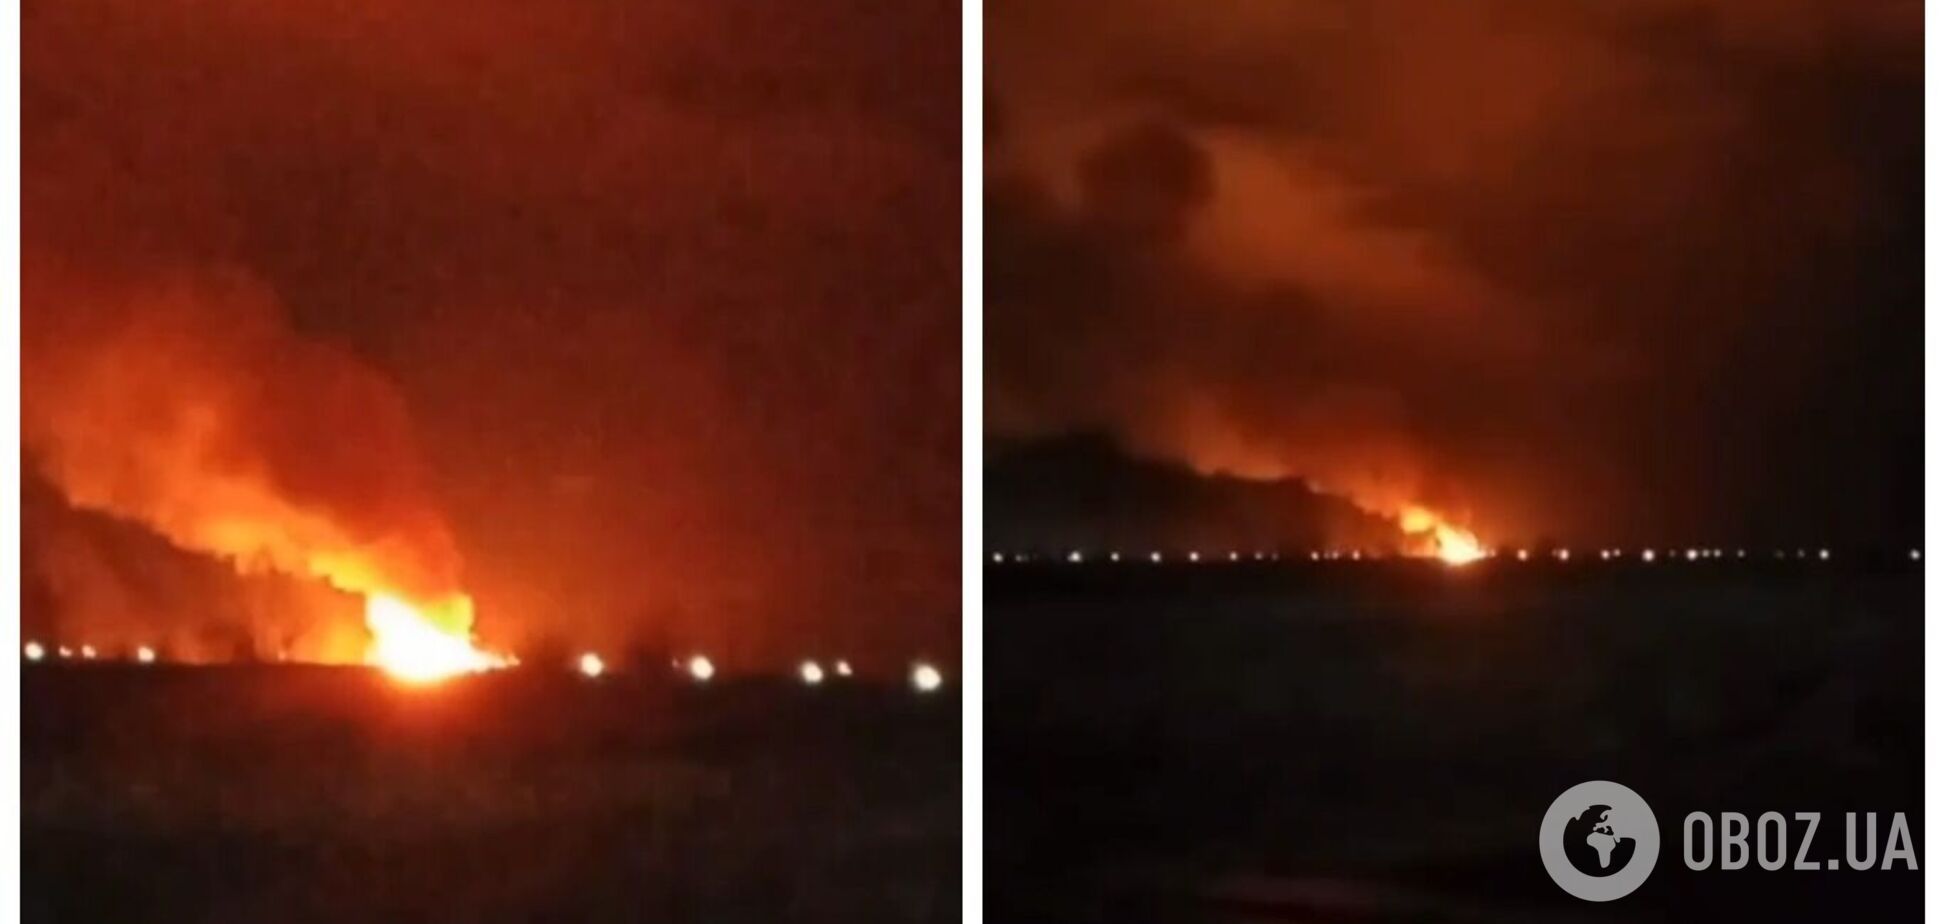 В Волгоградской области произошел мощный пожар на территории воинской части: были слышны звуки взрывов. Видео